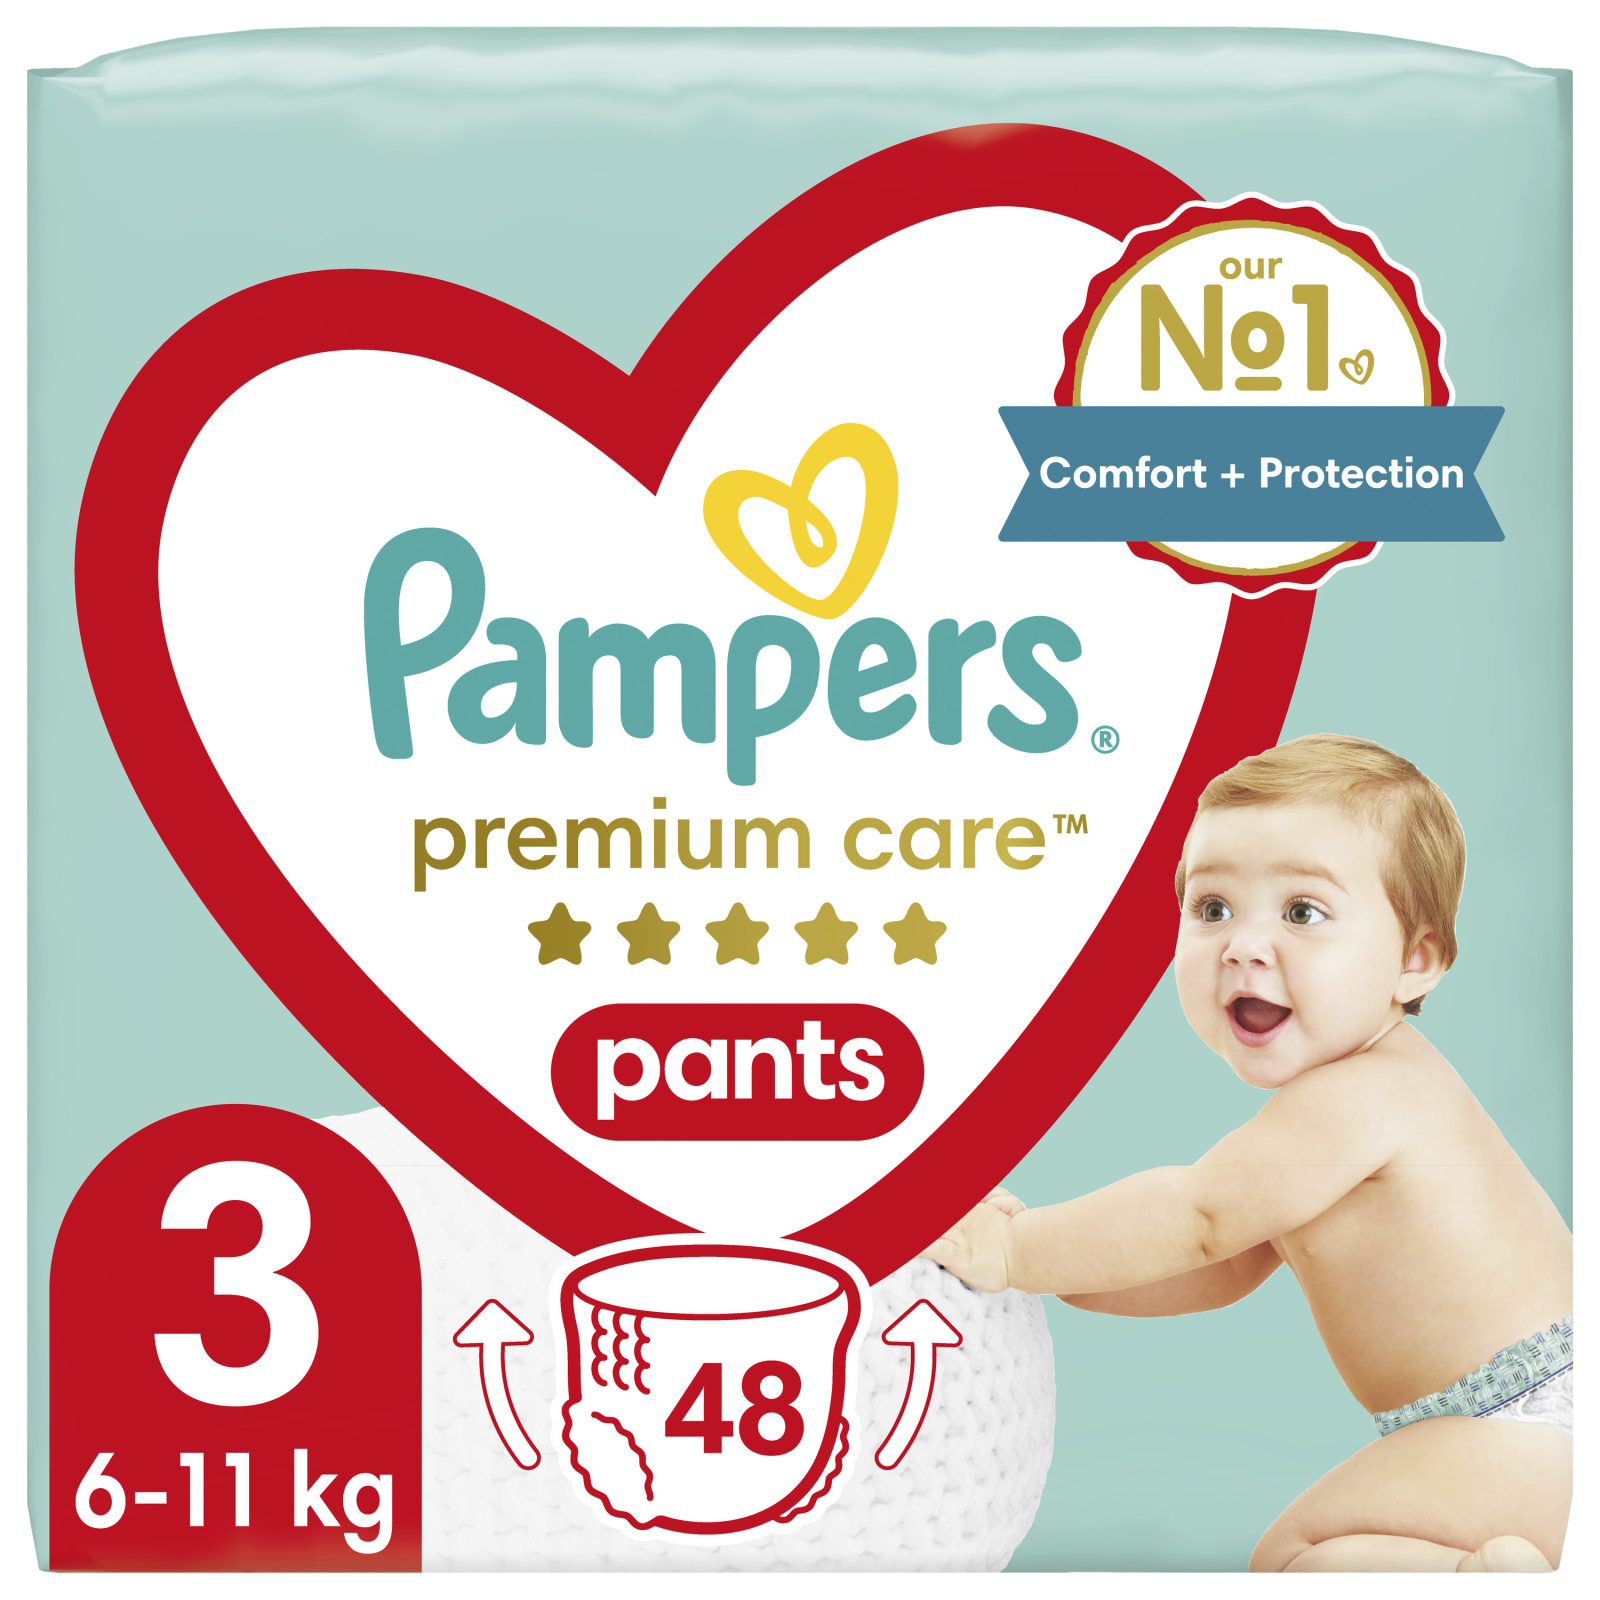 Підгузки Pampers Premium Care Pants Midi Розмір 3 70 шт (8001090759955)